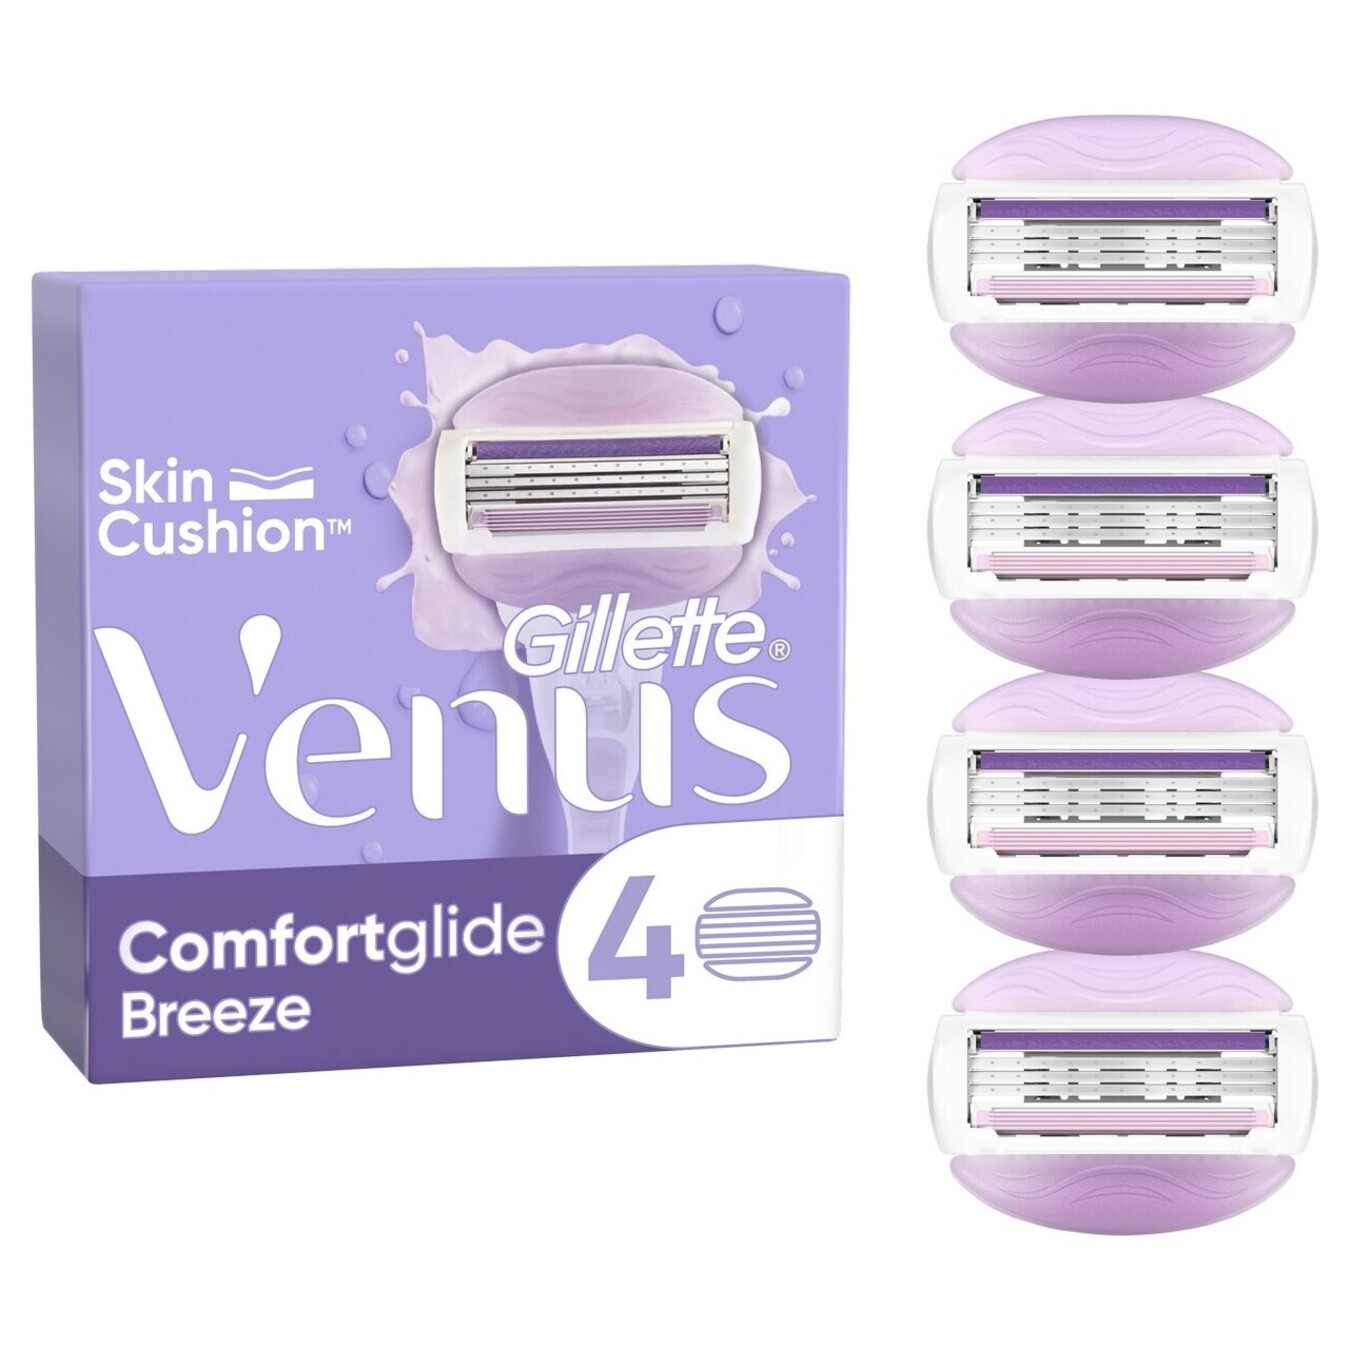 Venus Breeze shaving cartridges replaceable 2pcs 2